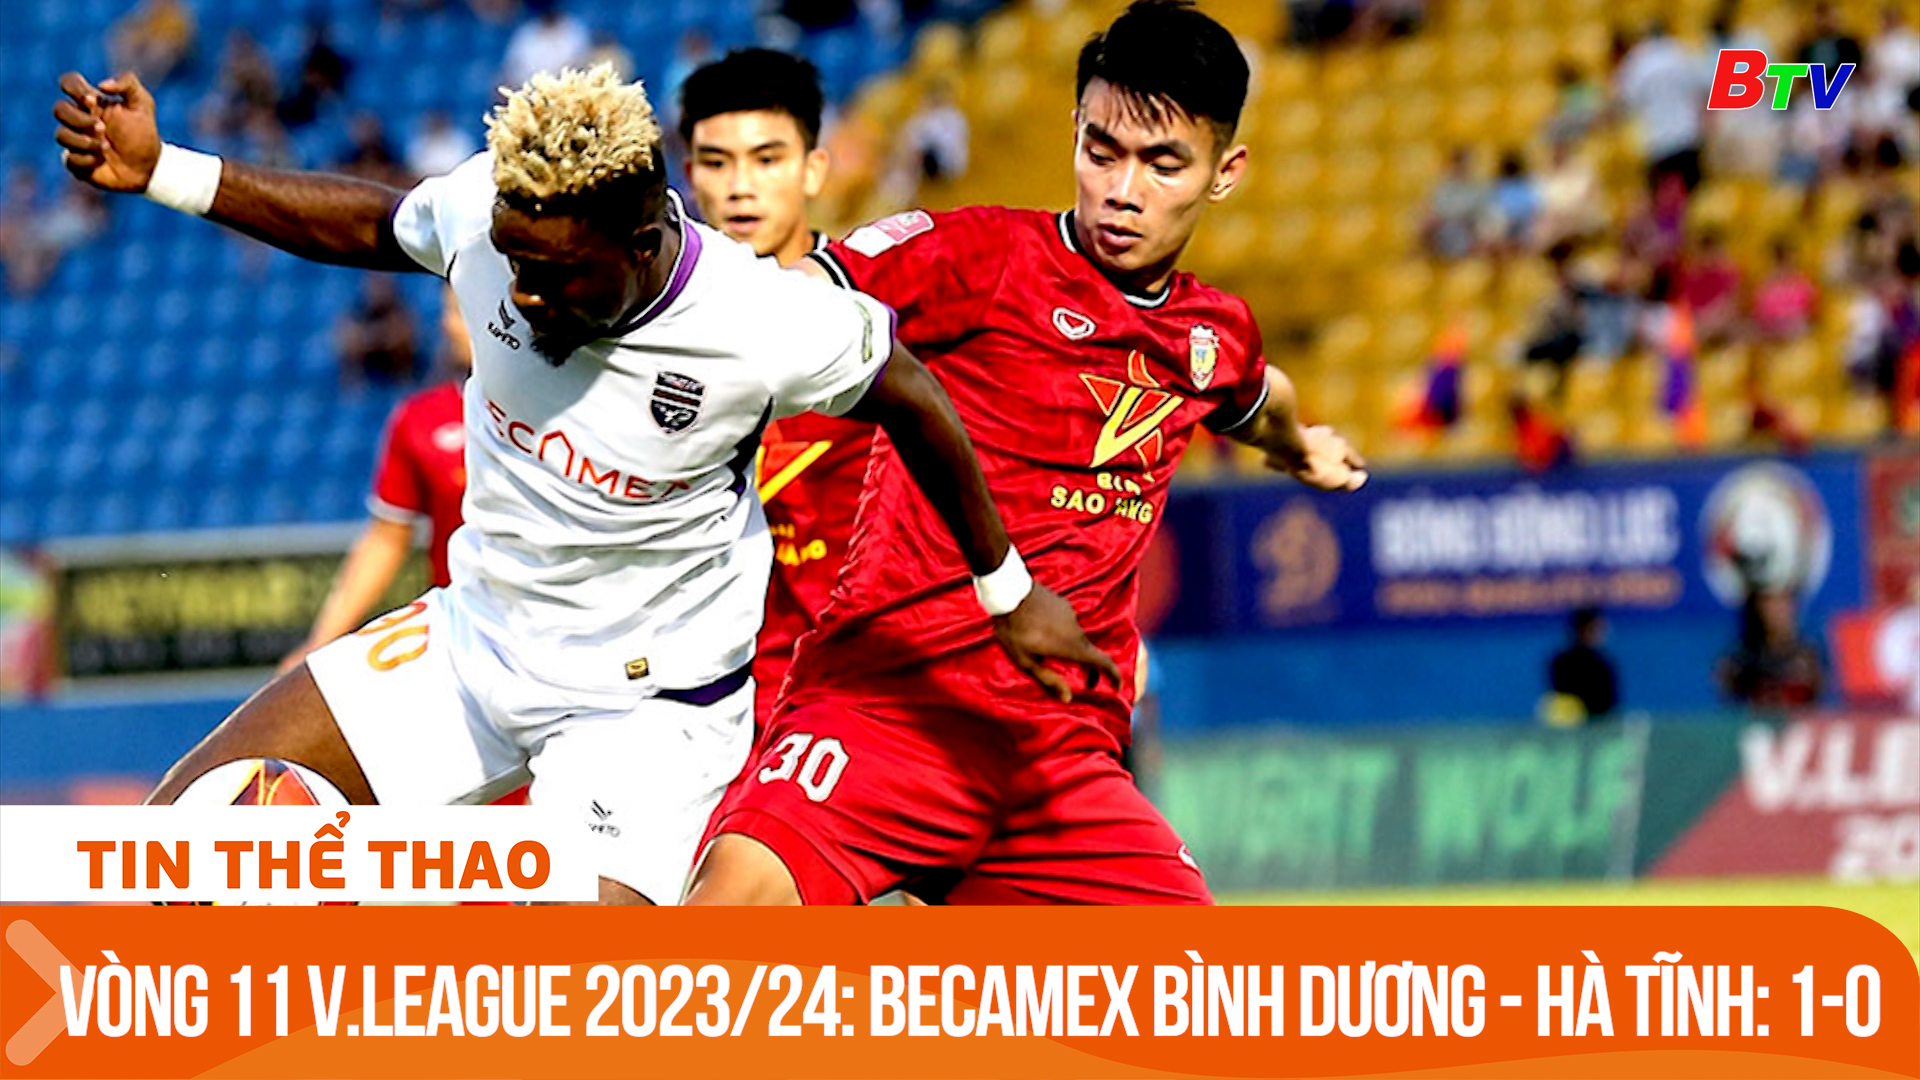 Vòng 11 V.League 2023/24: Becamex Bình Dương - Hà Tĩnh: 1-0 | Tin Thể thao 24h	